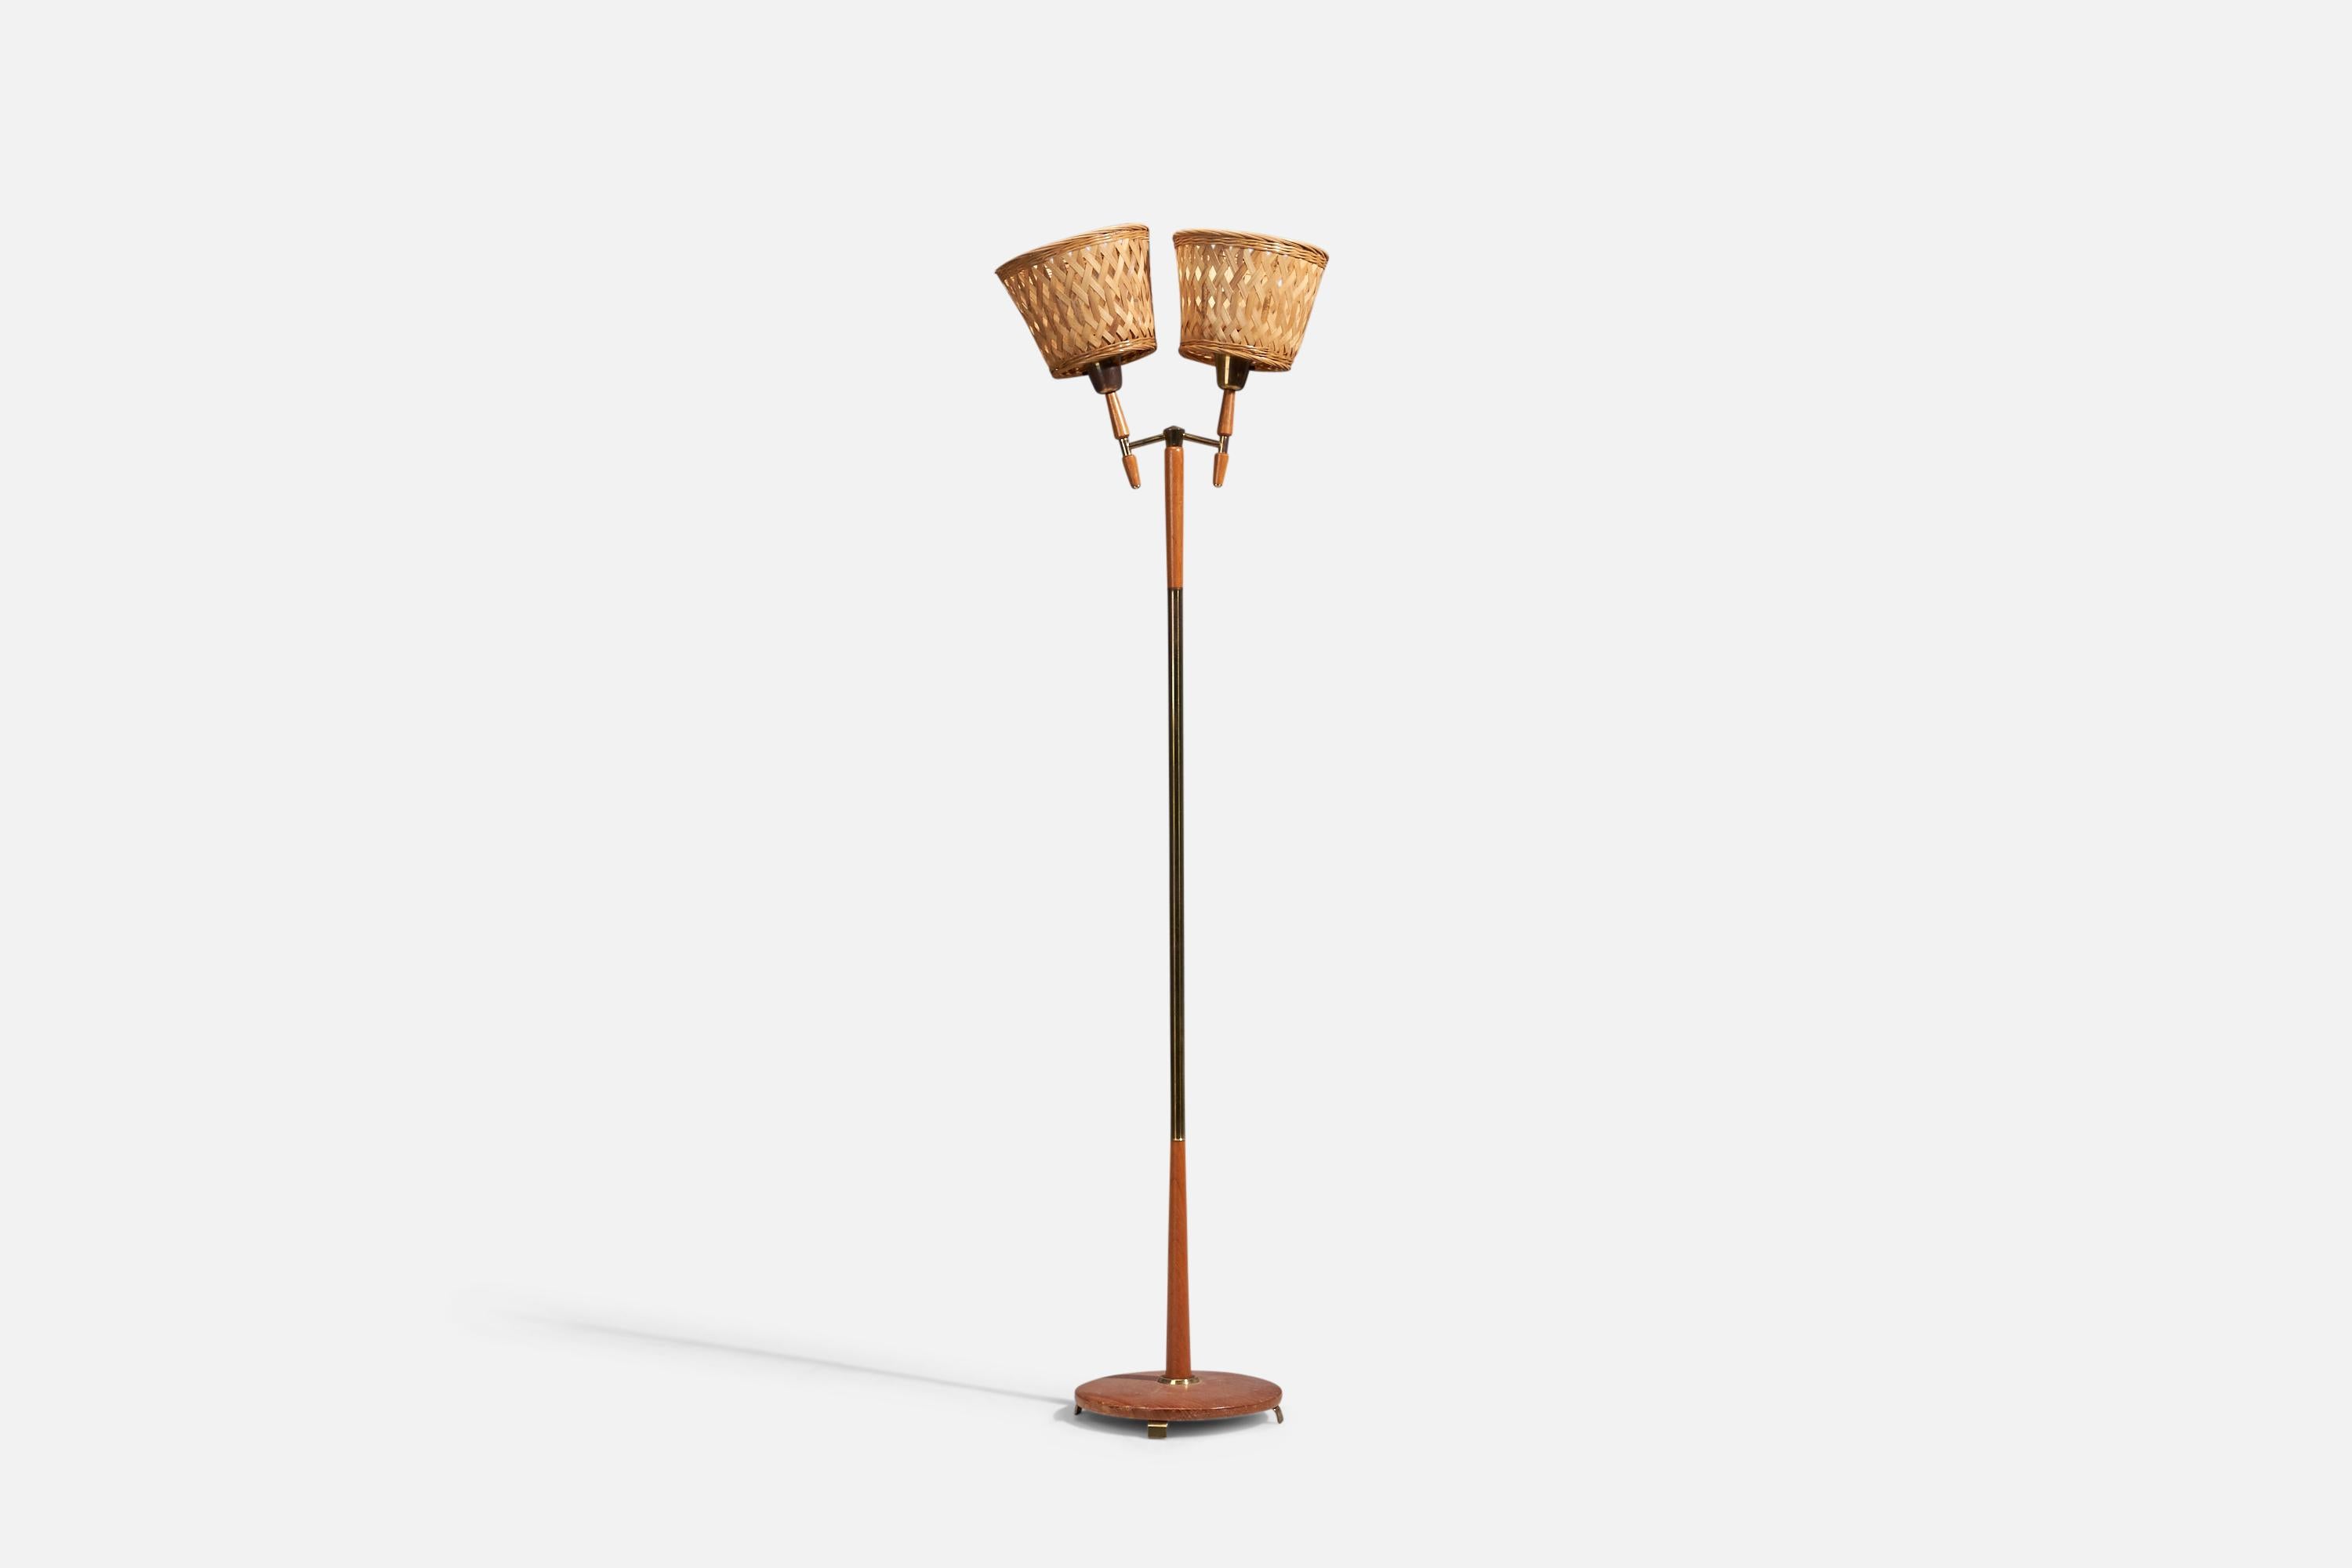 Stehleuchte aus Messing, Teakholz und Rattan, entworfen und hergestellt in Schweden, 1950er Jahre

Verkauft mit Lampenschirmen. Die angegebenen Maße beziehen sich auf die Stehlampe mit Lampenschirmen.

Die Fassungen sind für Standard-Glühbirnen